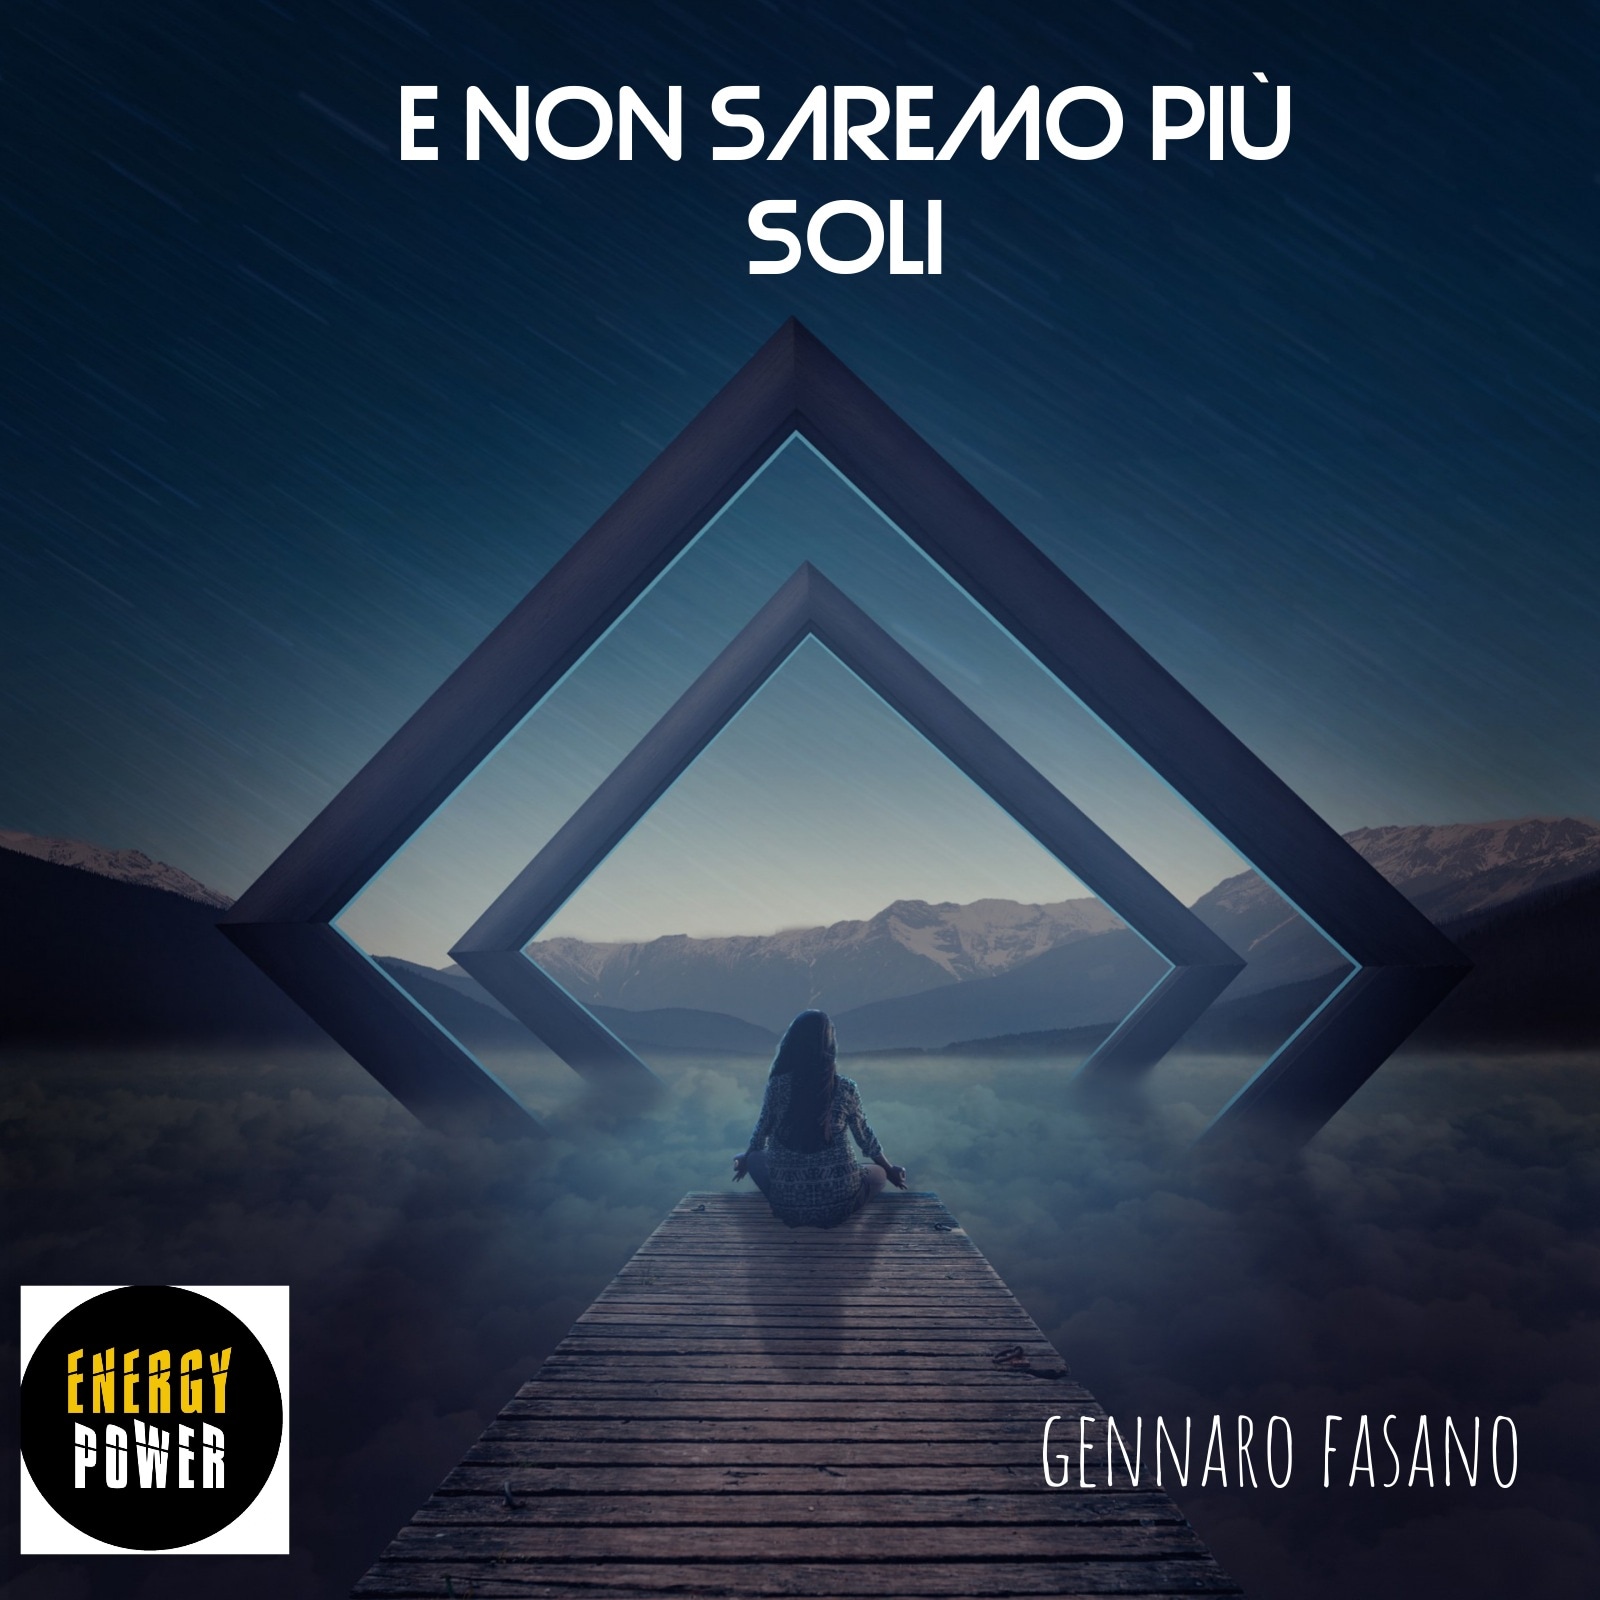 Gennaro Fasano fuori ora con il singolo “E non saremo più soli”(Energy Power Label di Marianna Durastante)